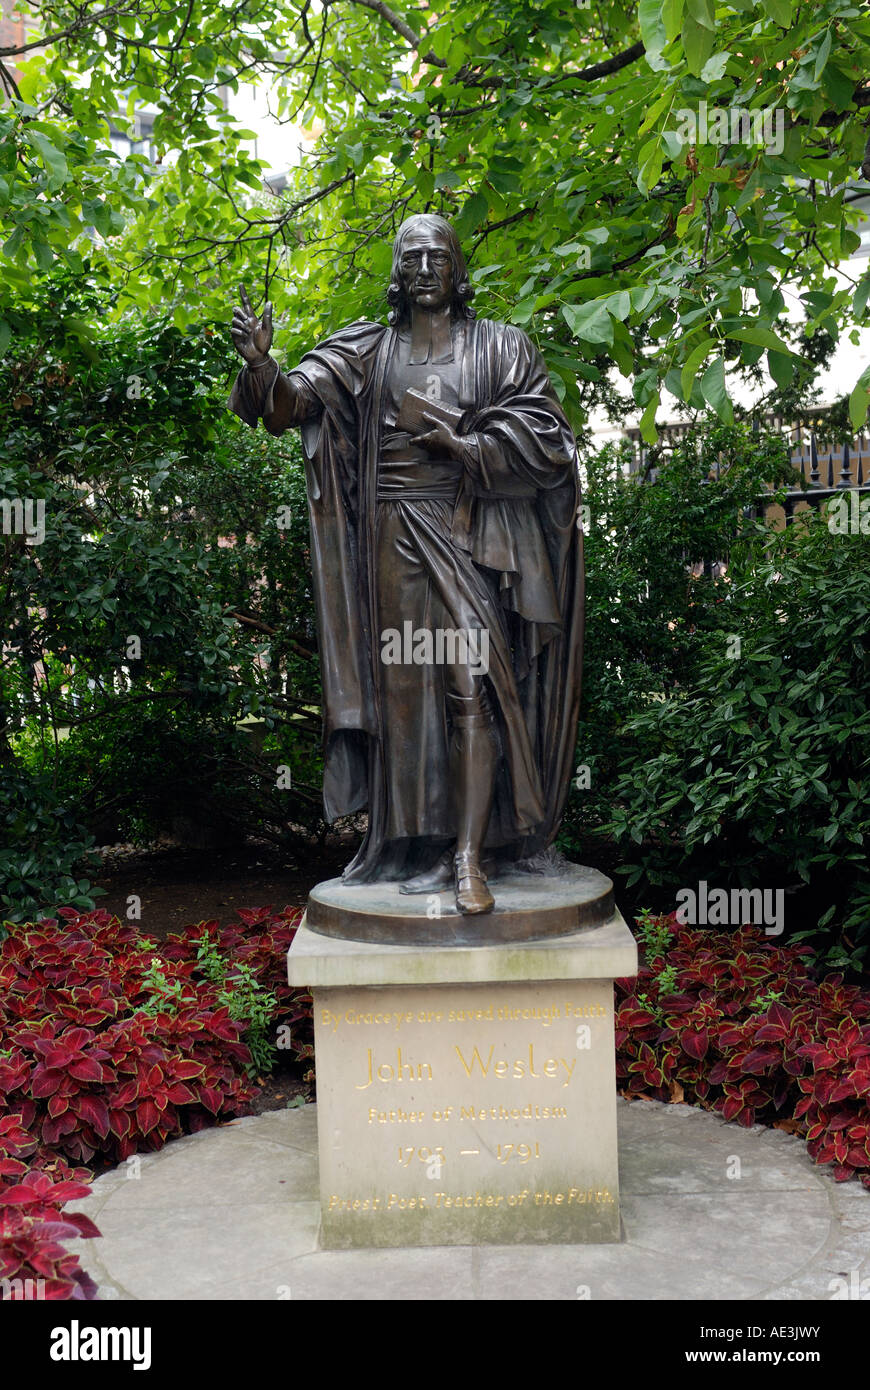 STATUE DE JOHN Wesley, fondateur de l'église méthodiste près de St Pauls City de Londres Angleterre Banque D'Images